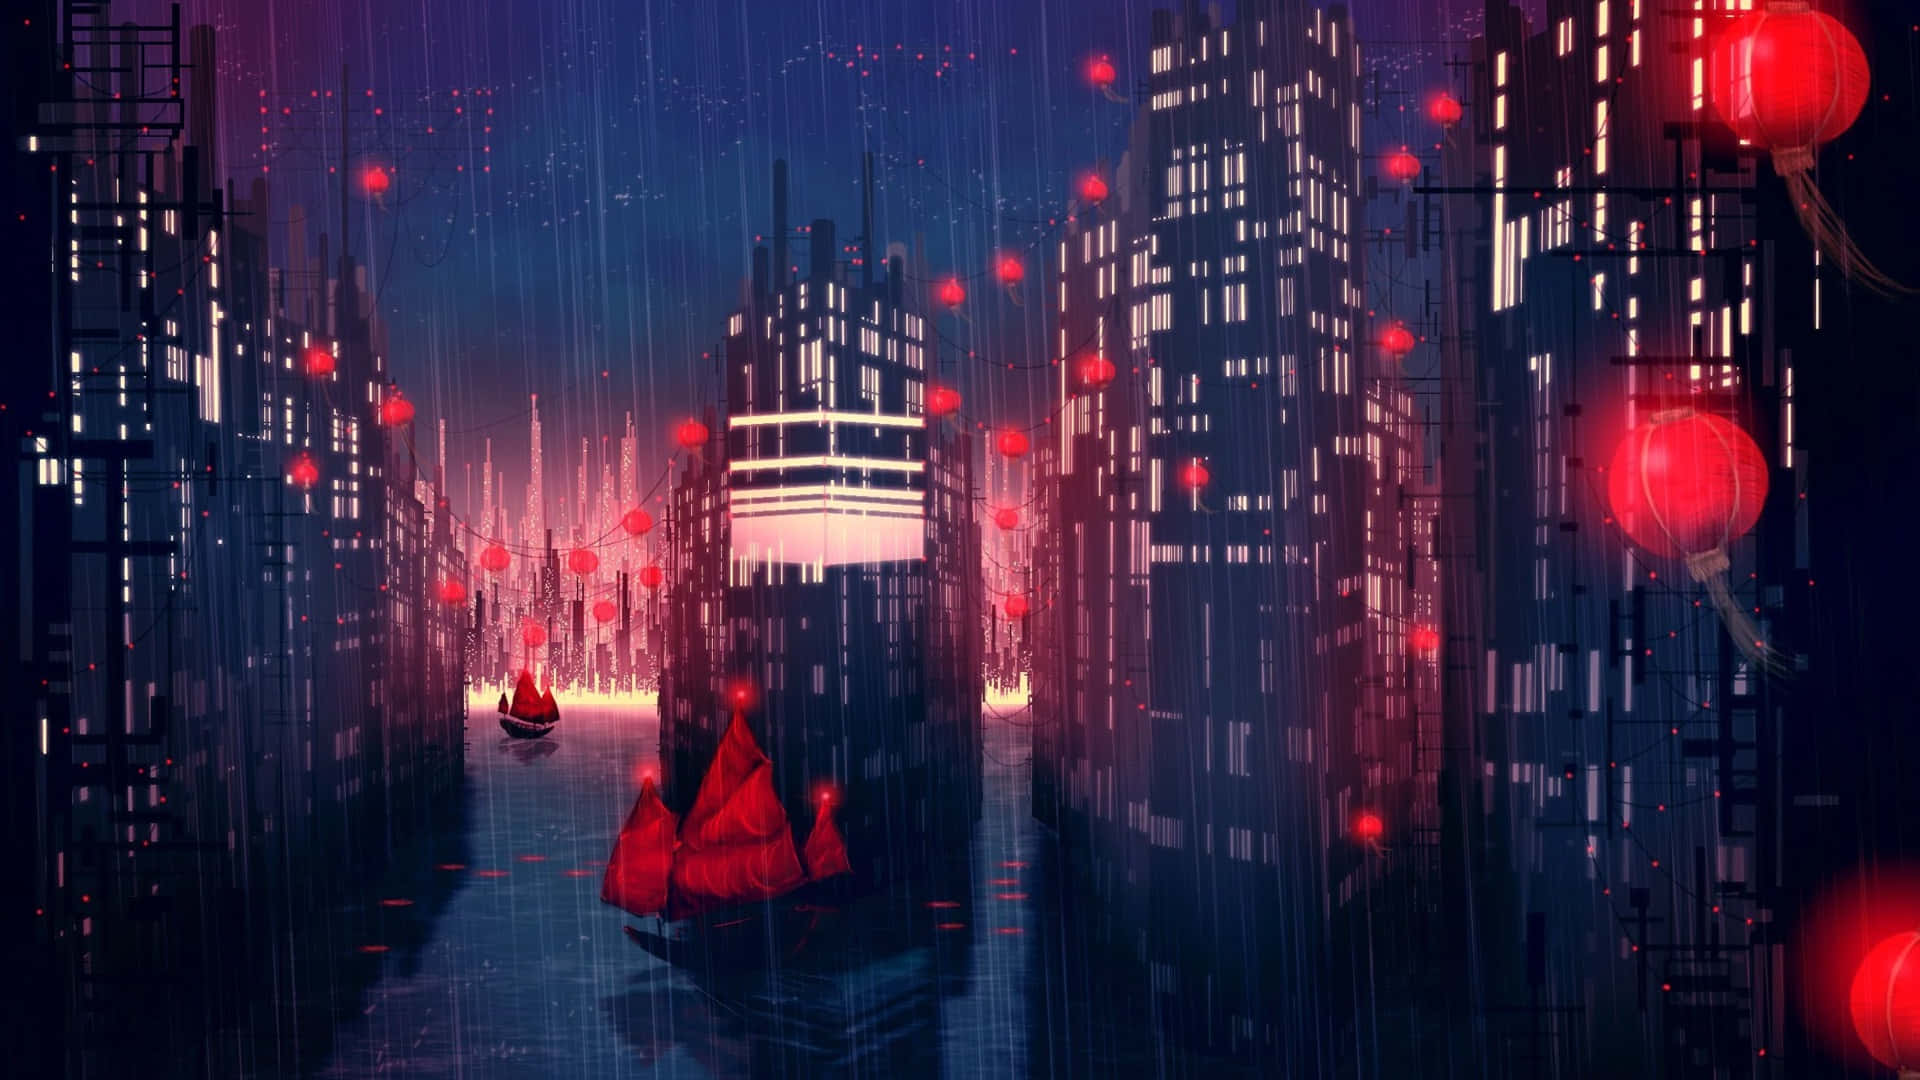 An Anime Scene on a Moist Rainy Day